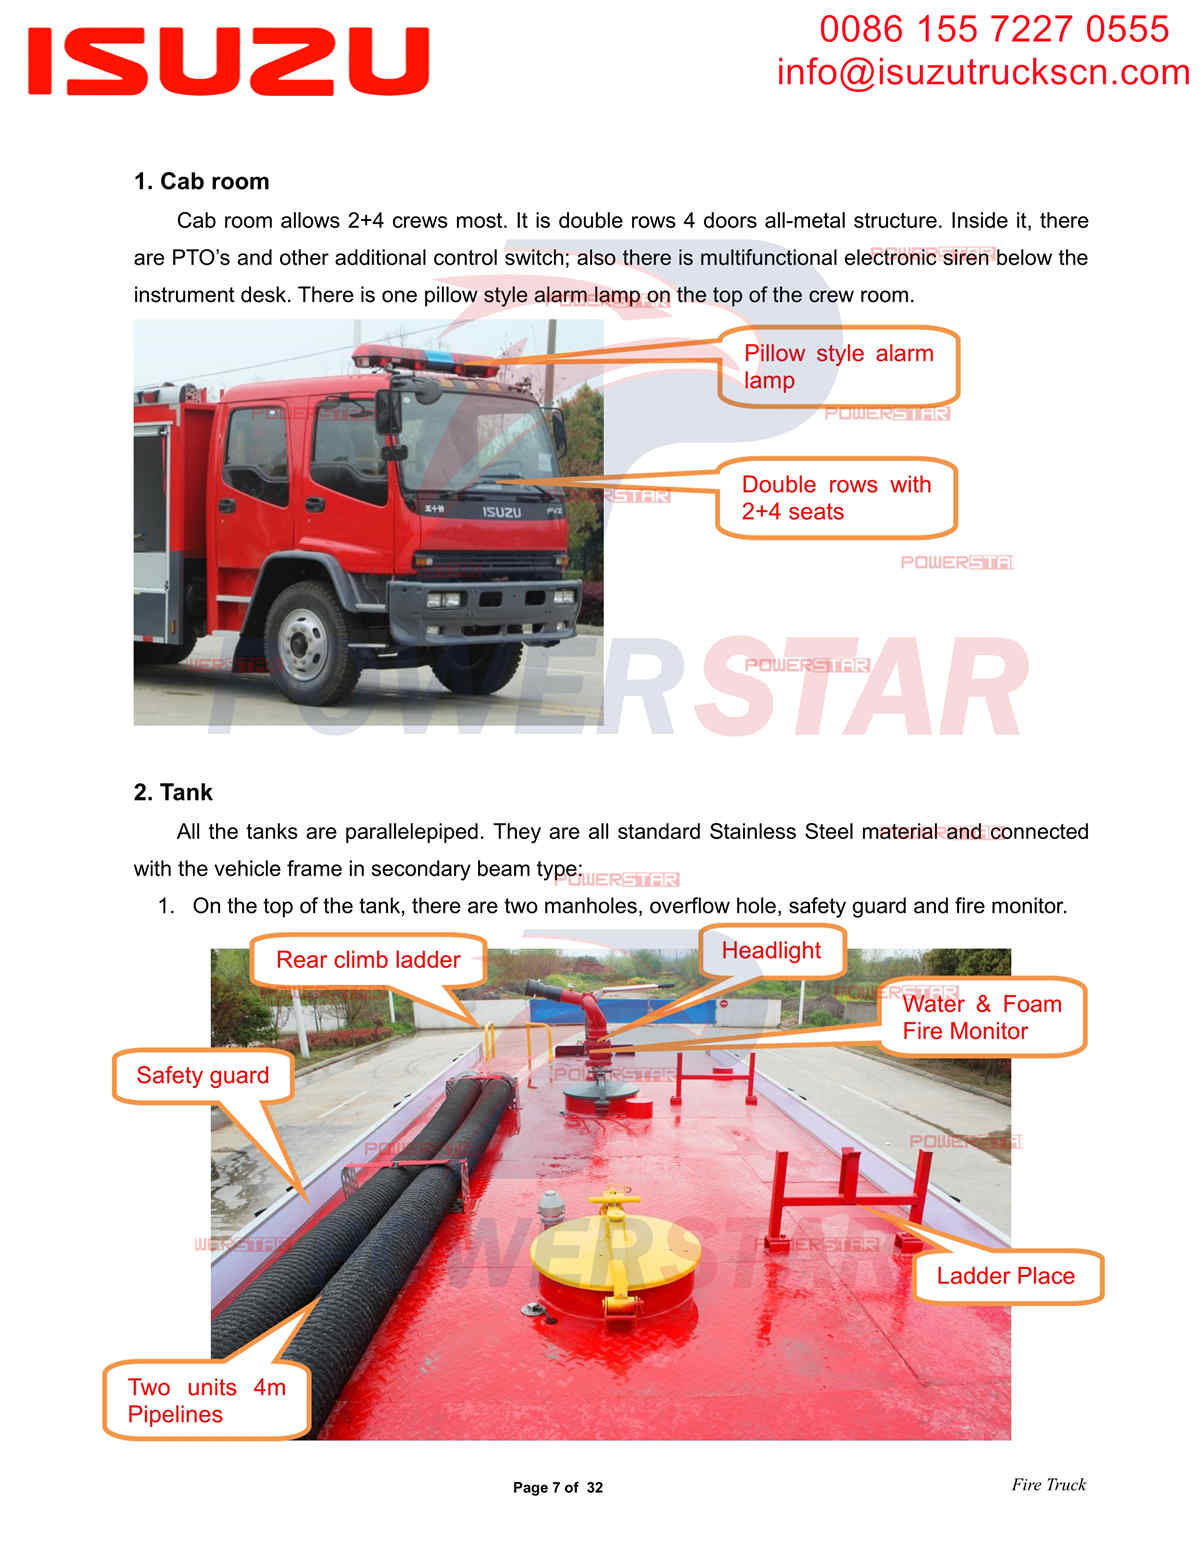 Exportación de camiones de bomberos POWERSTAR ISUZU FVZ a África